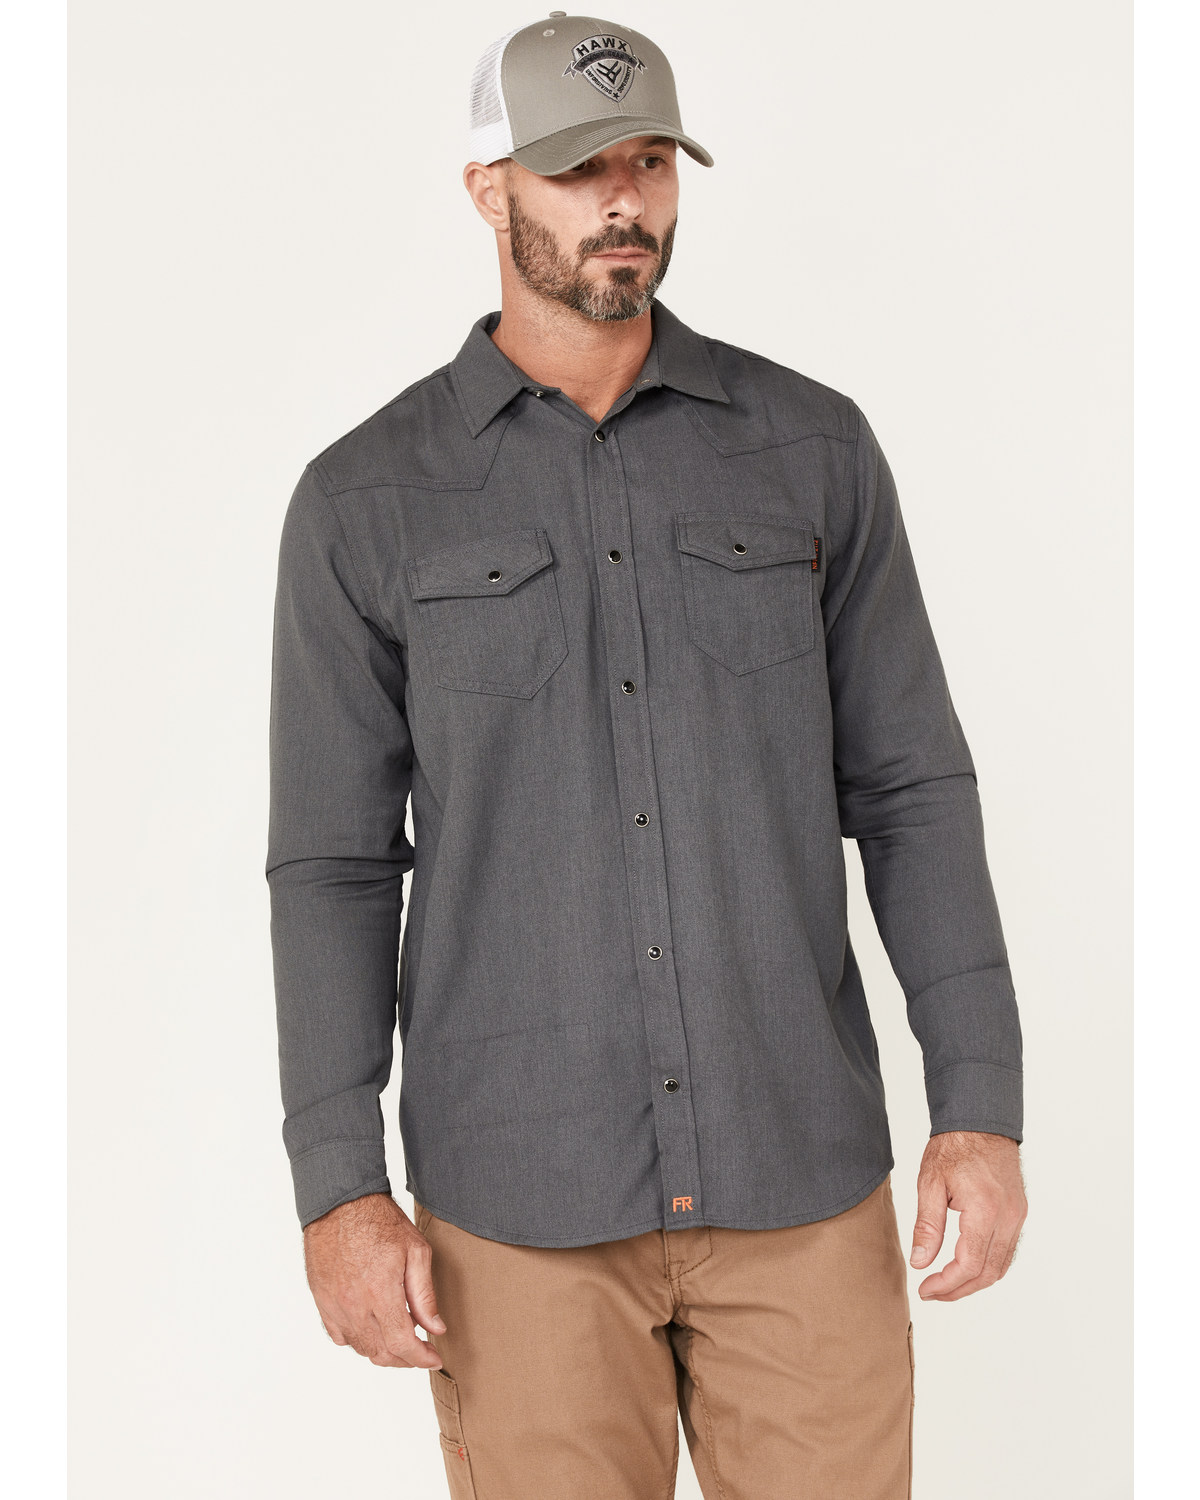 Cody James Men's FR Solid Lightweight Inherent Long Sleeve Snap Work Shirt